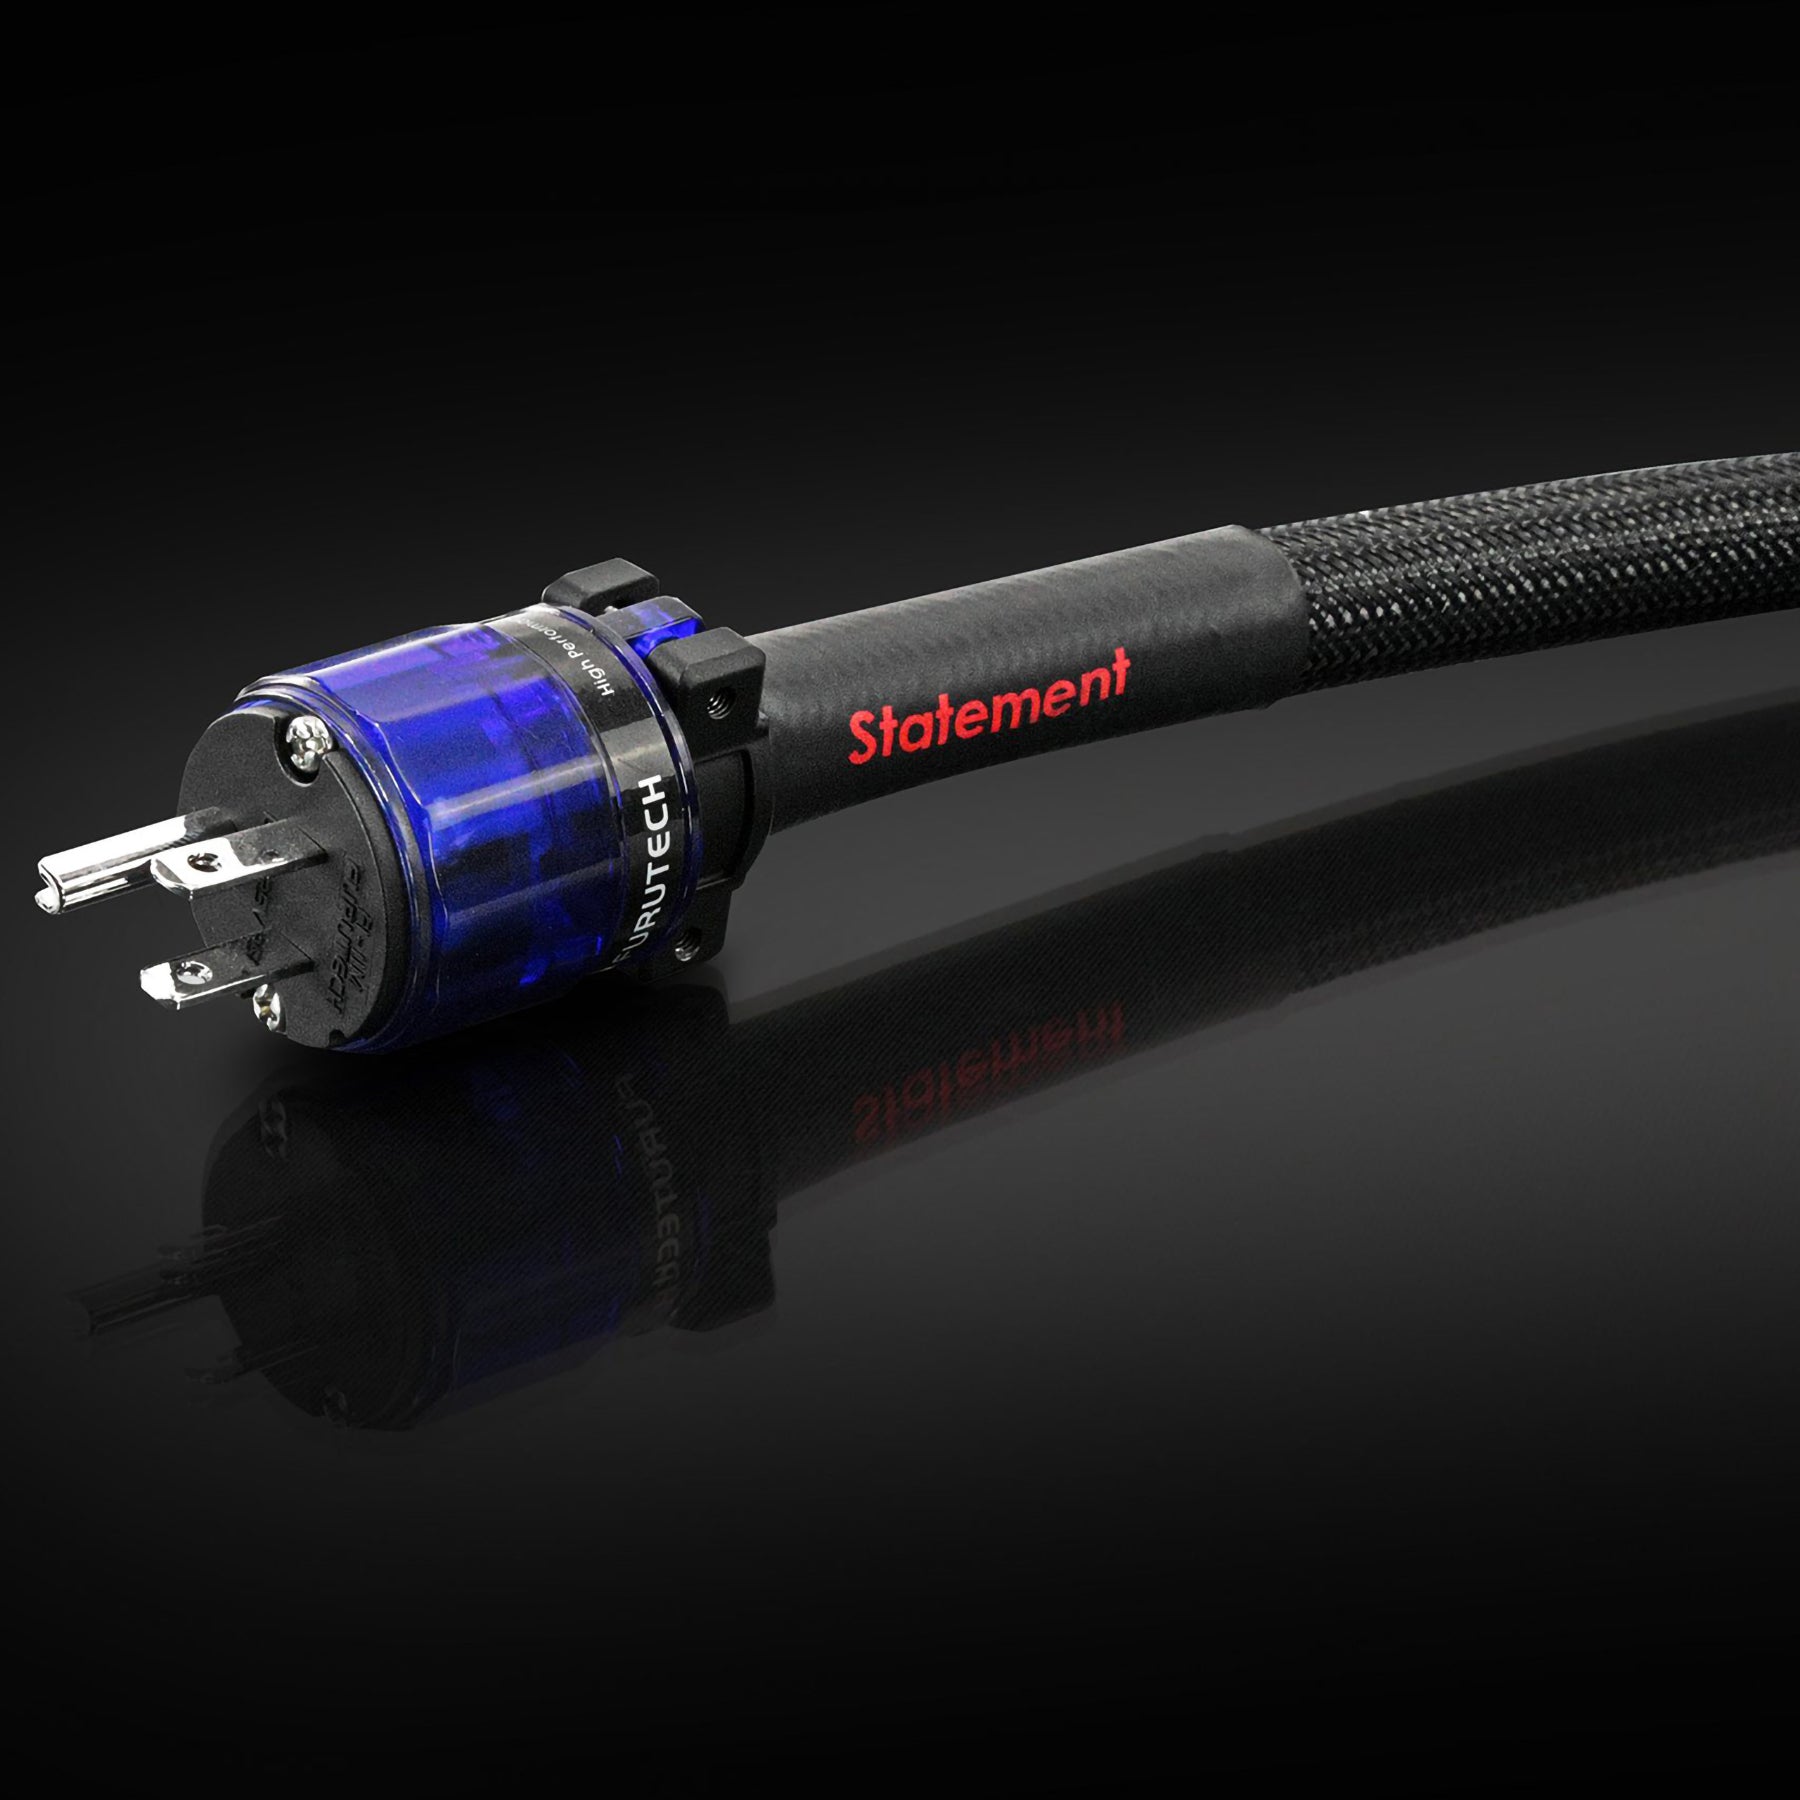 Tellurium Q StatementAUS-IEC Power Cable